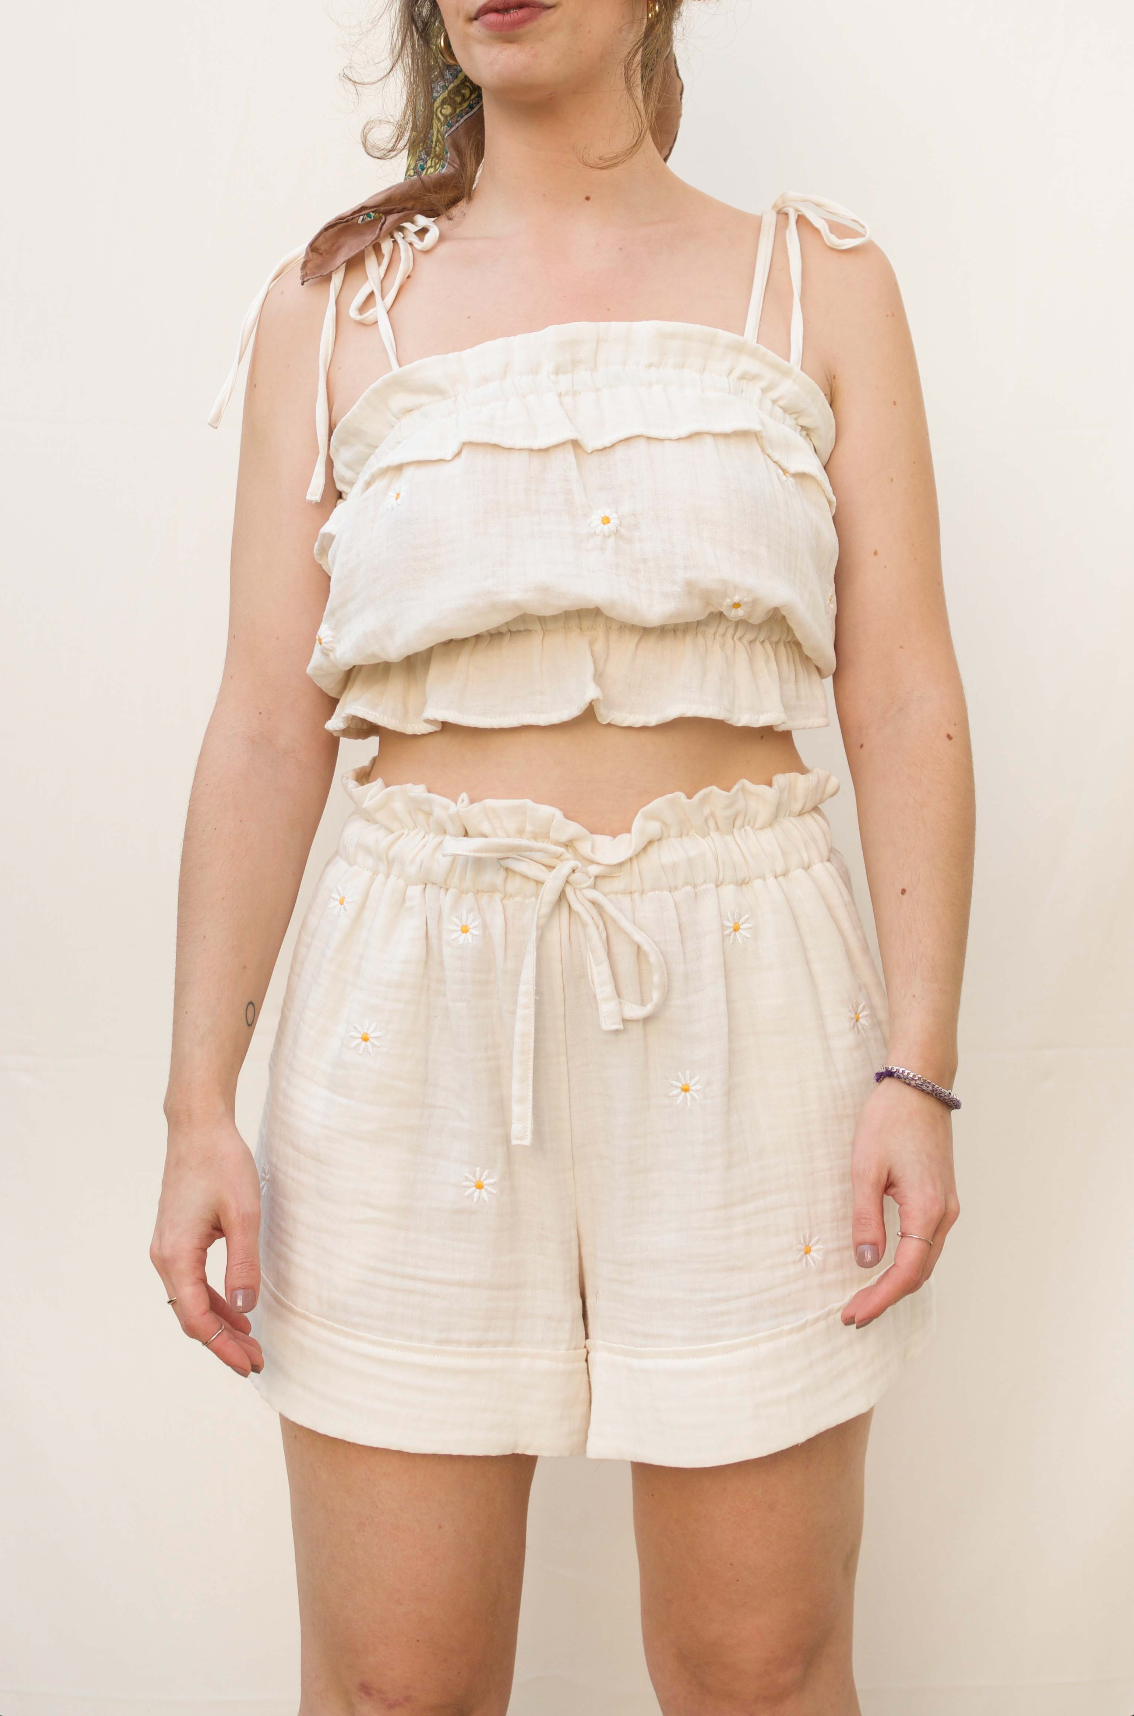 LAU Shorts - Embroidery